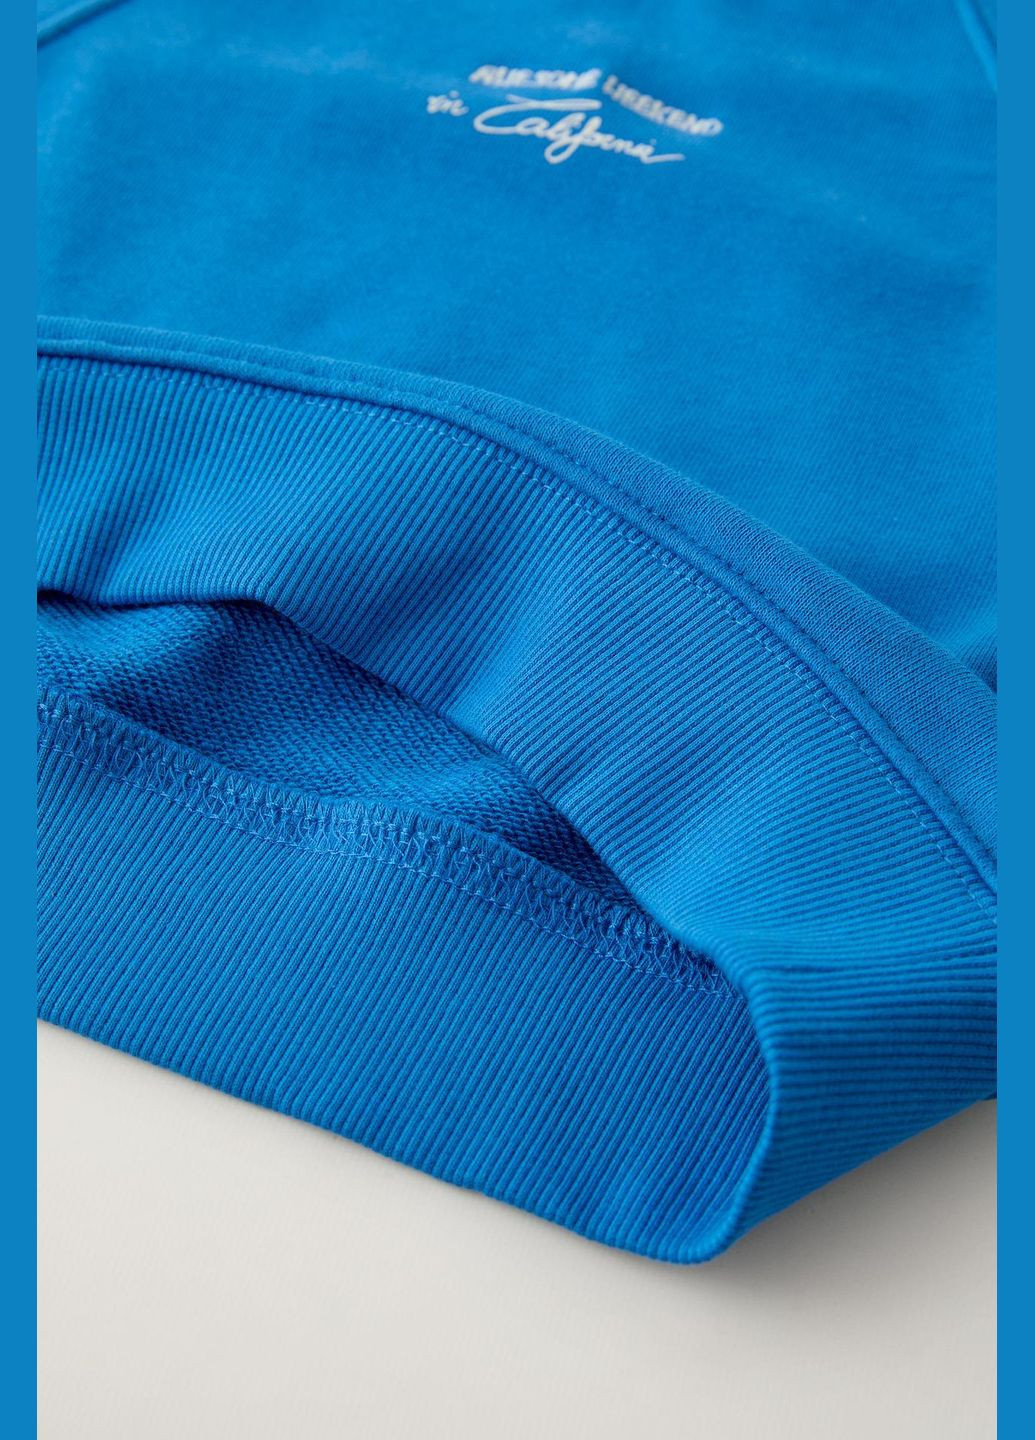 Блакитний комплект дитячий (світшот + шорти) 9000/667 блакитний Zara